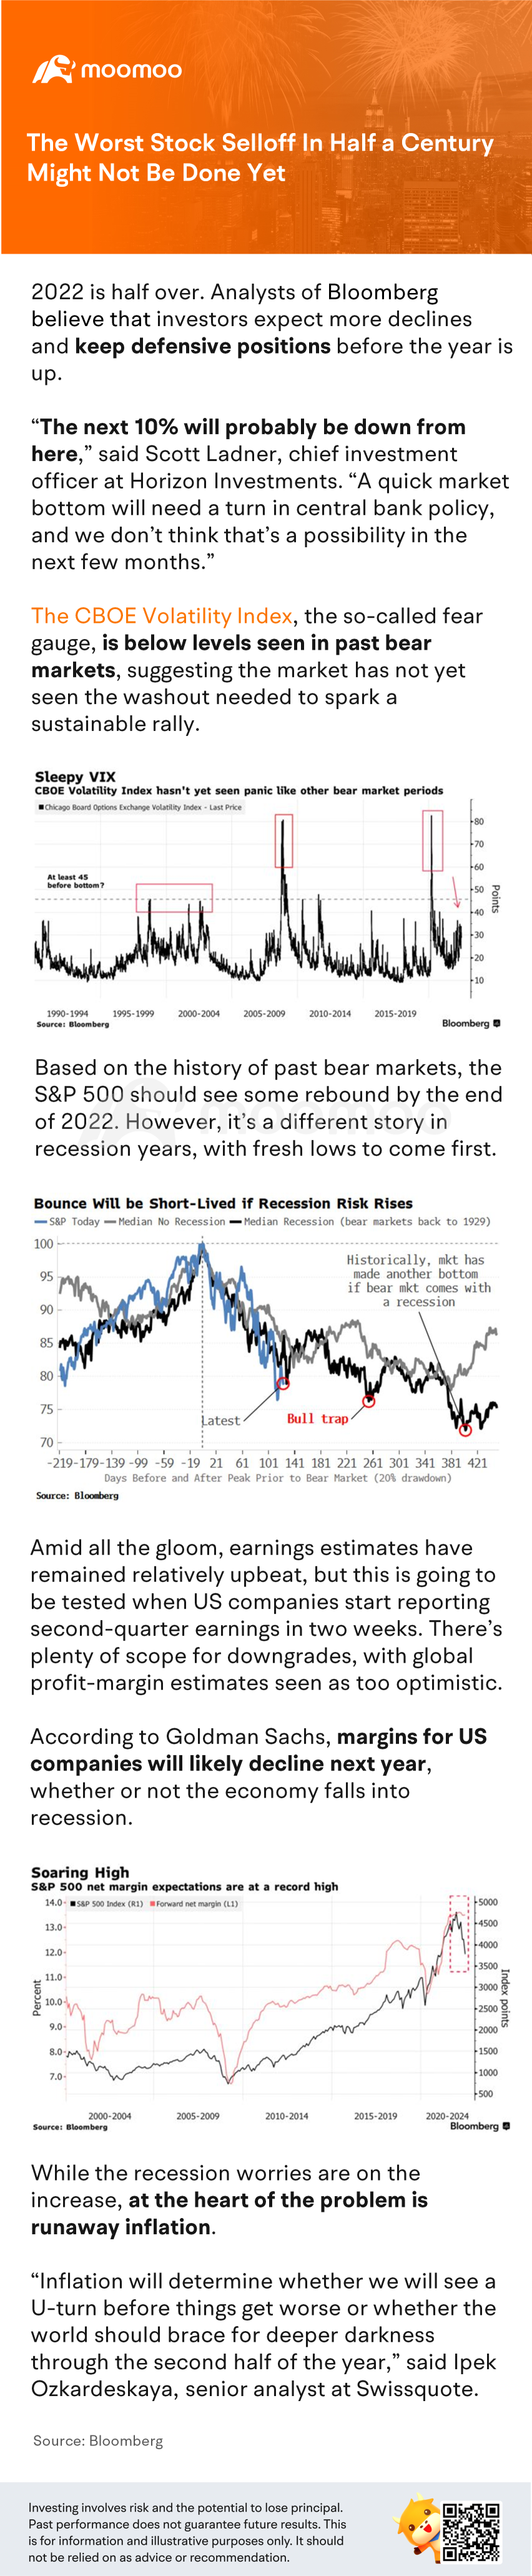 半世紀で最悪の株式売却はまだ終わっていないかもしれません